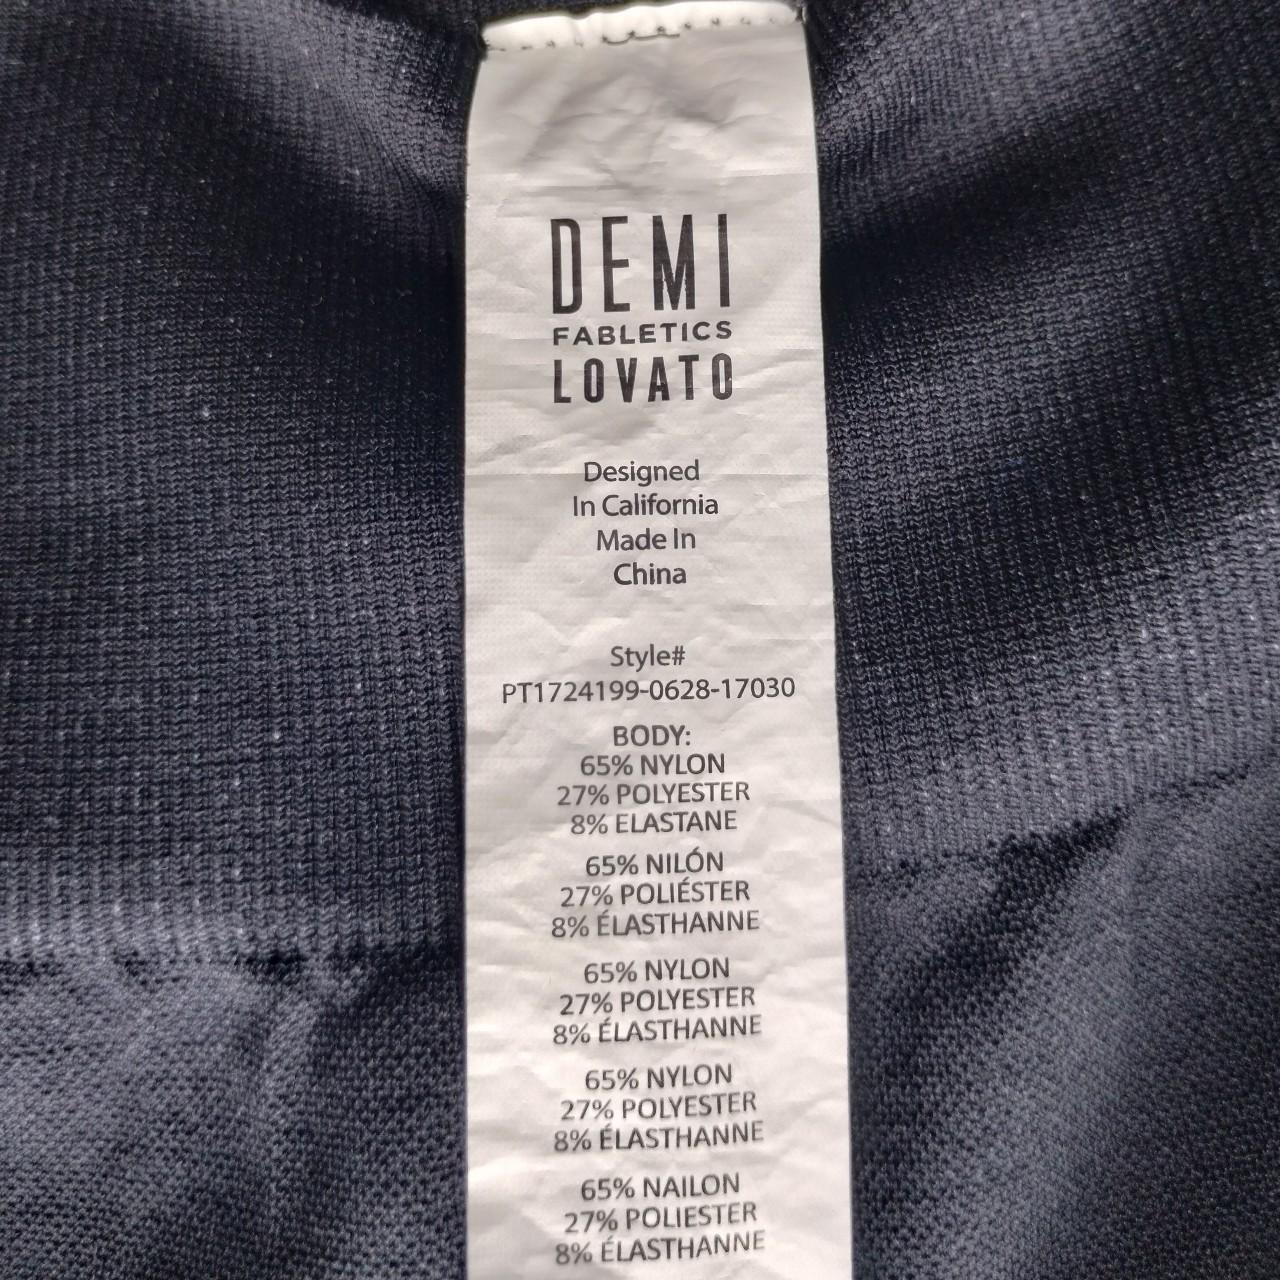 Demi Lovato x Fabletics Heart Mesh Leggings Gently - Depop